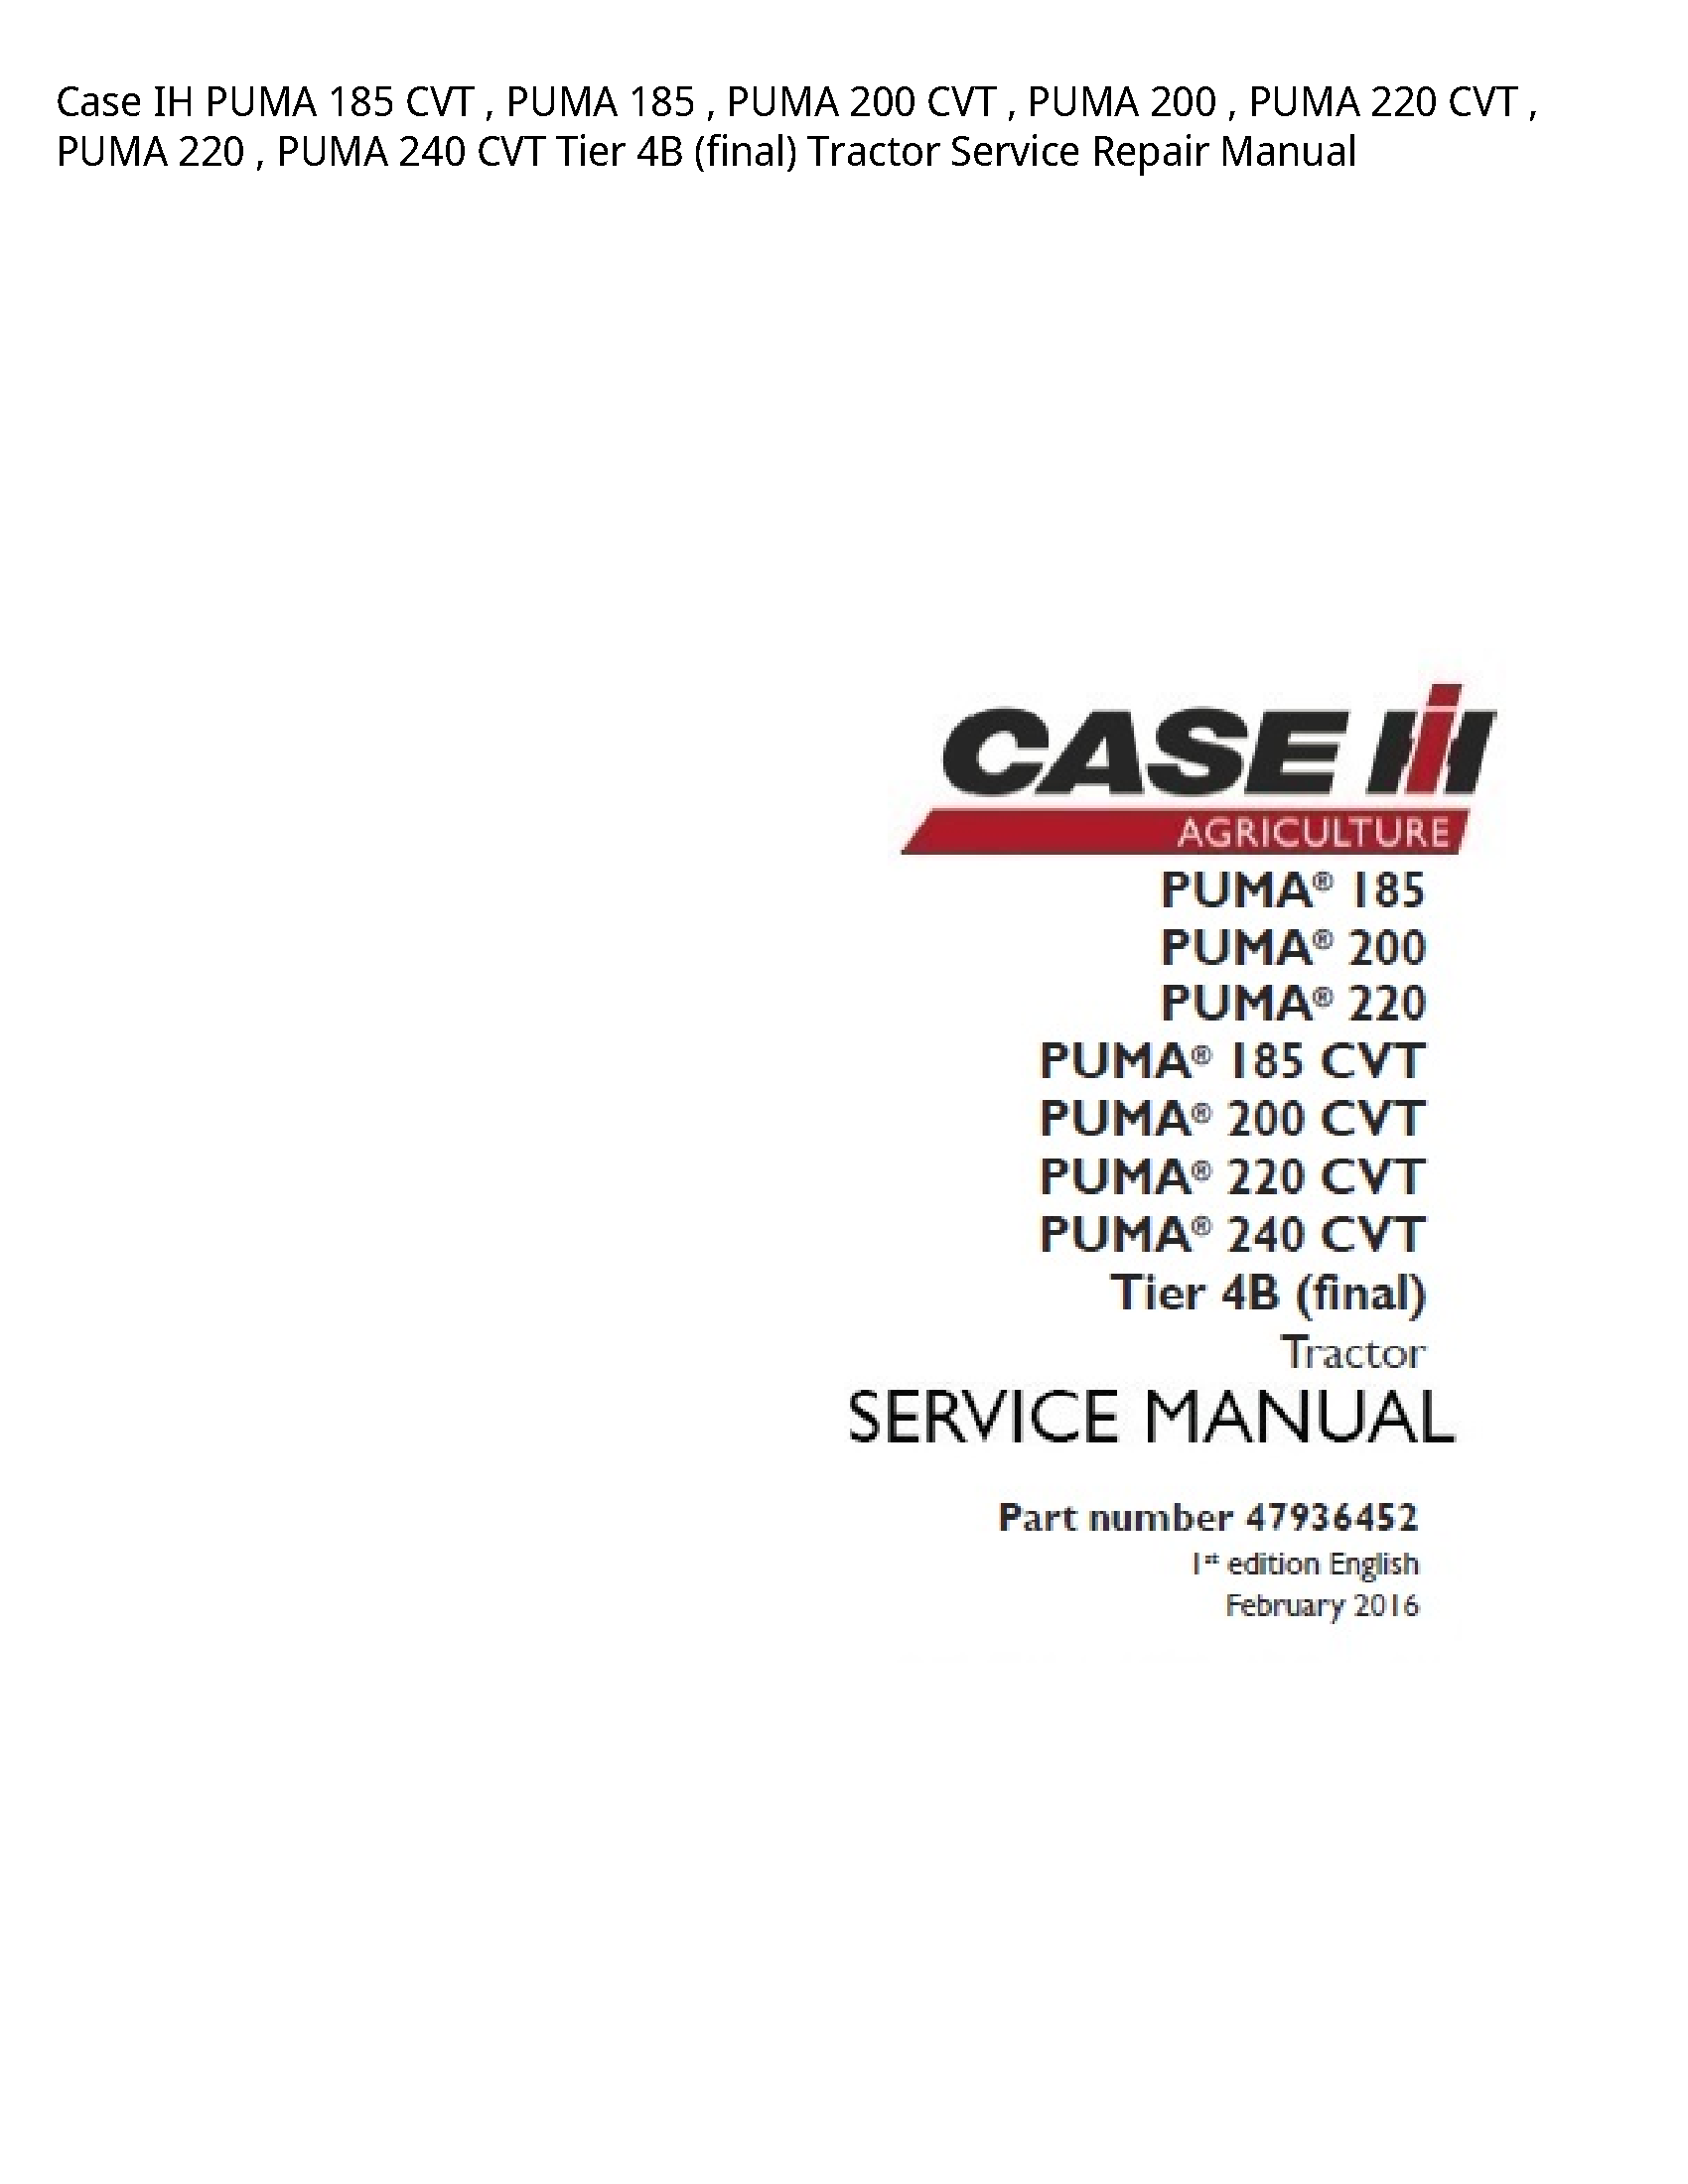 Case/Case IH 185 IH PUMA CVT PUMA PUMA CVT PUMA PUMA CVT PUMA PUMA CVT Tier (final) Tractor manual